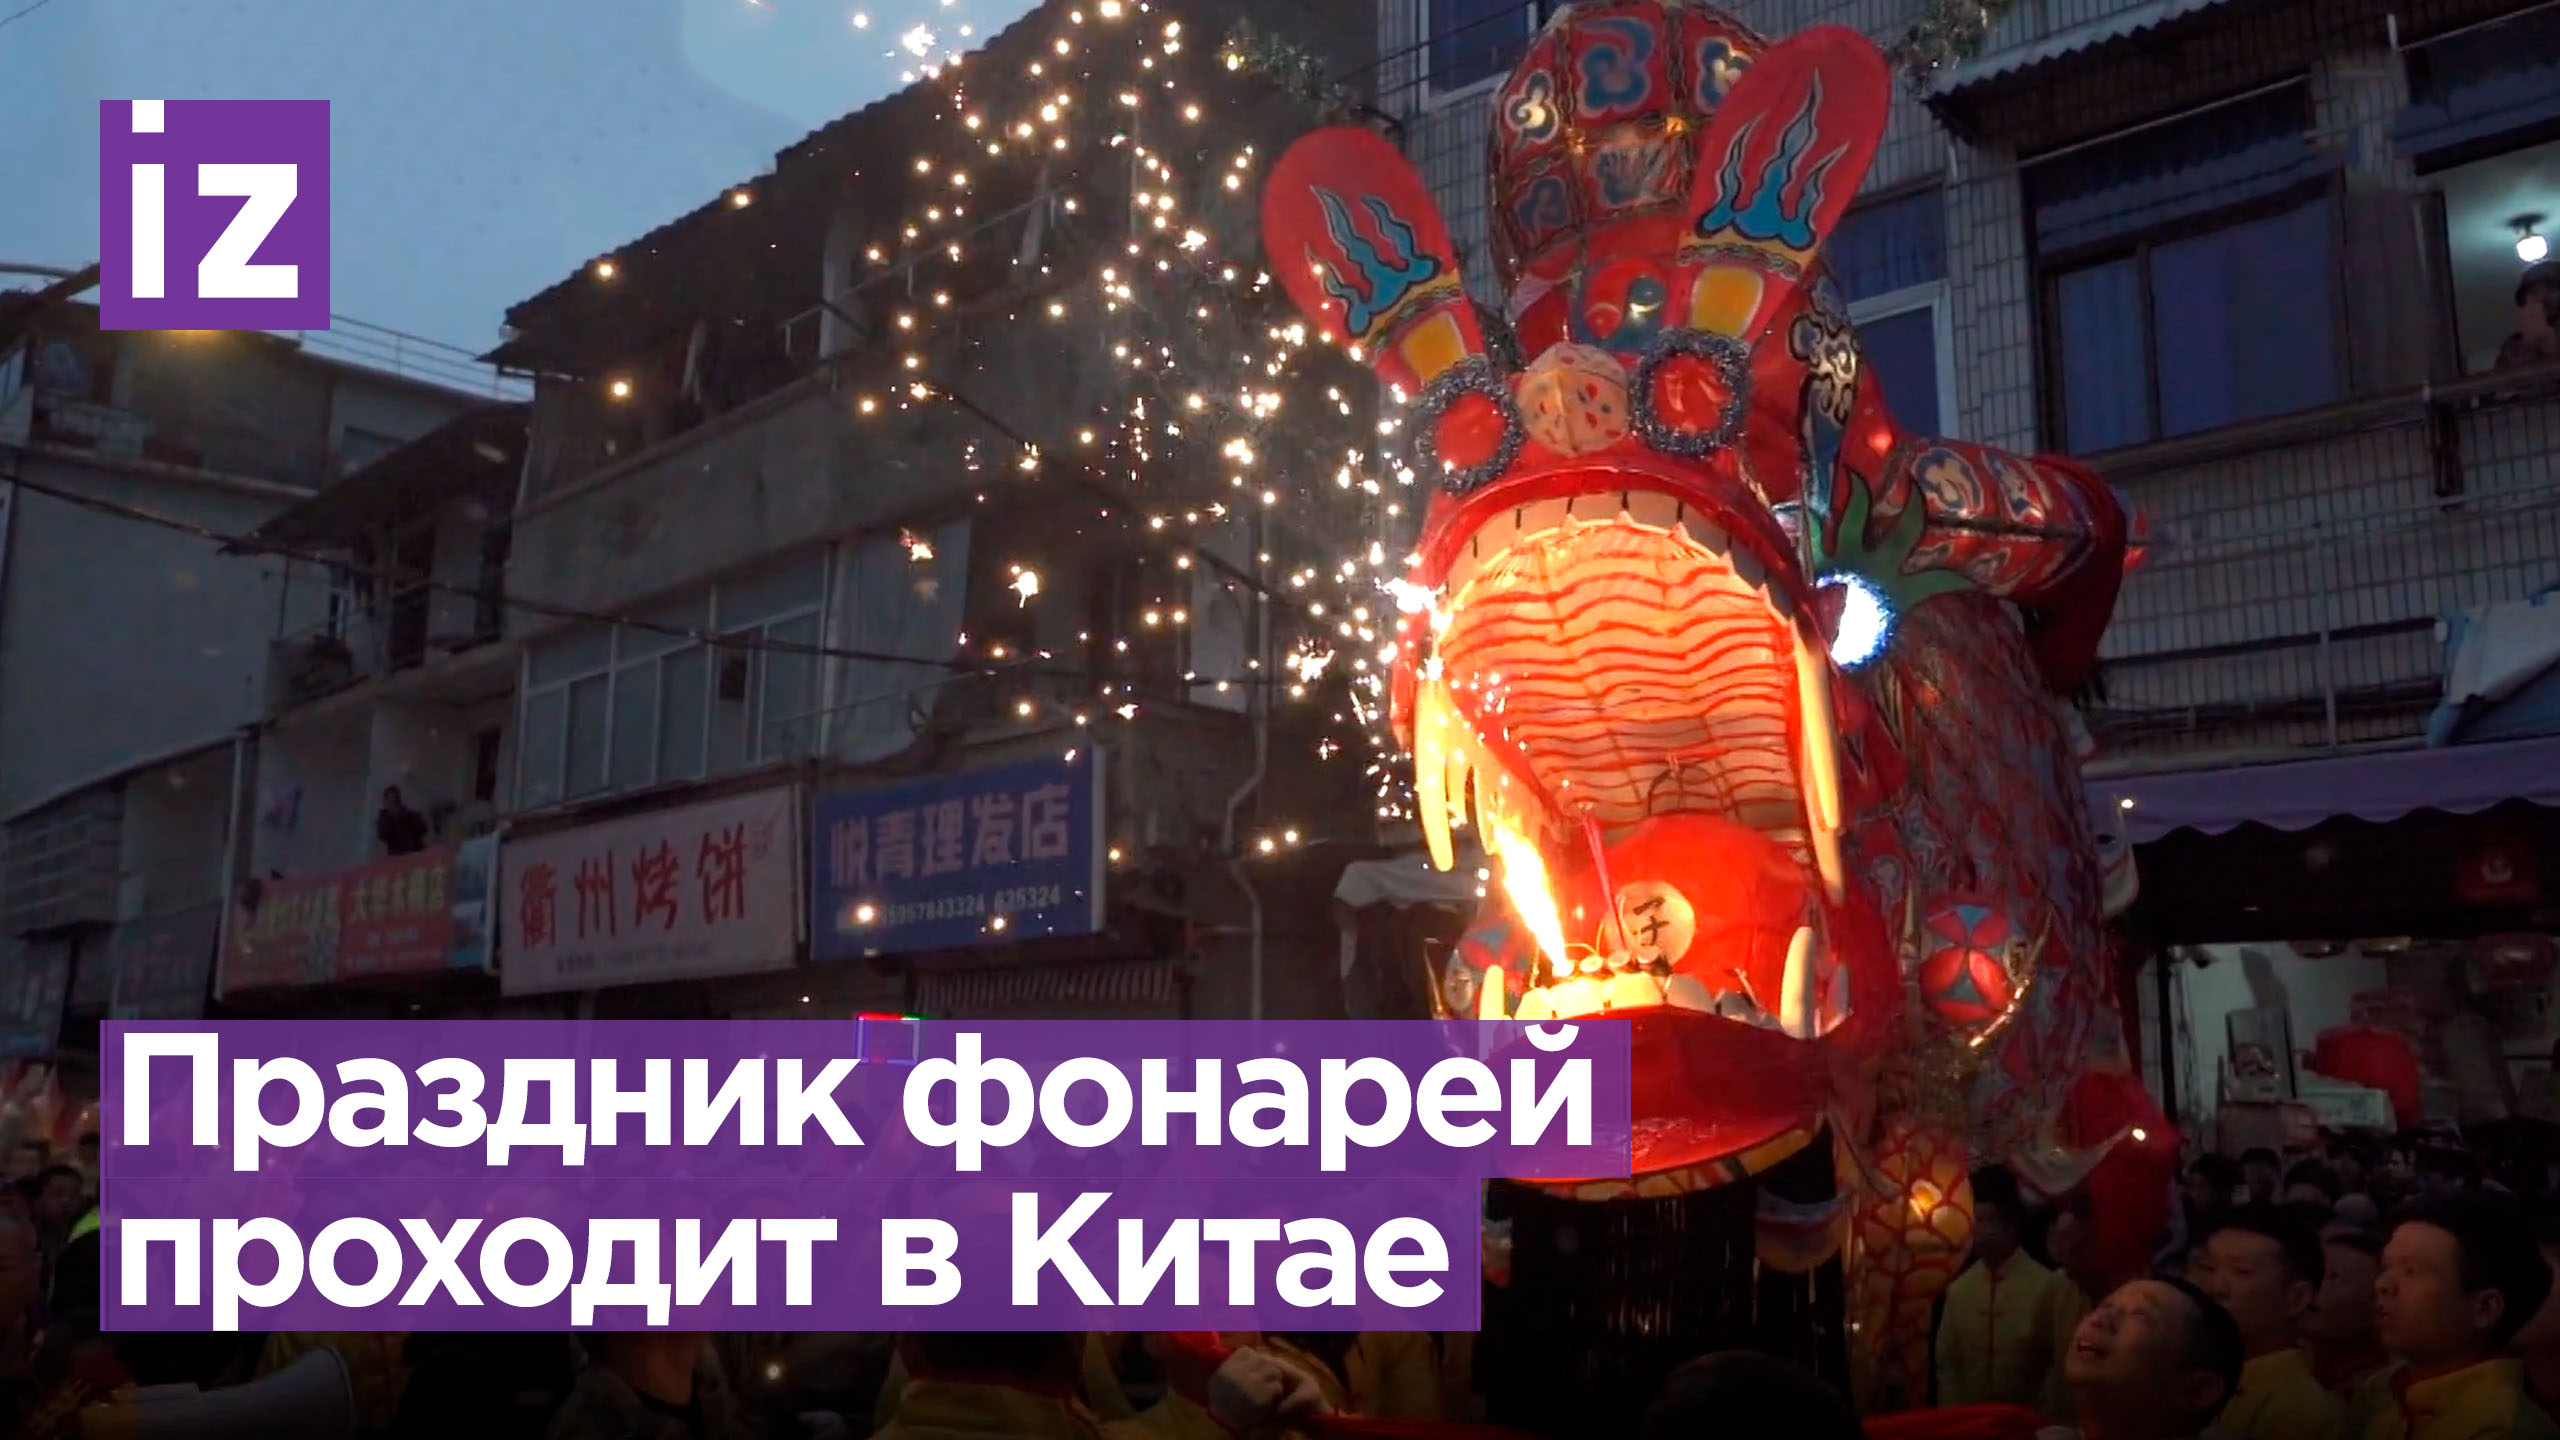 Огромный светящийся дракон танцует по улицам: фестиваль фонарей в Китае / Известия